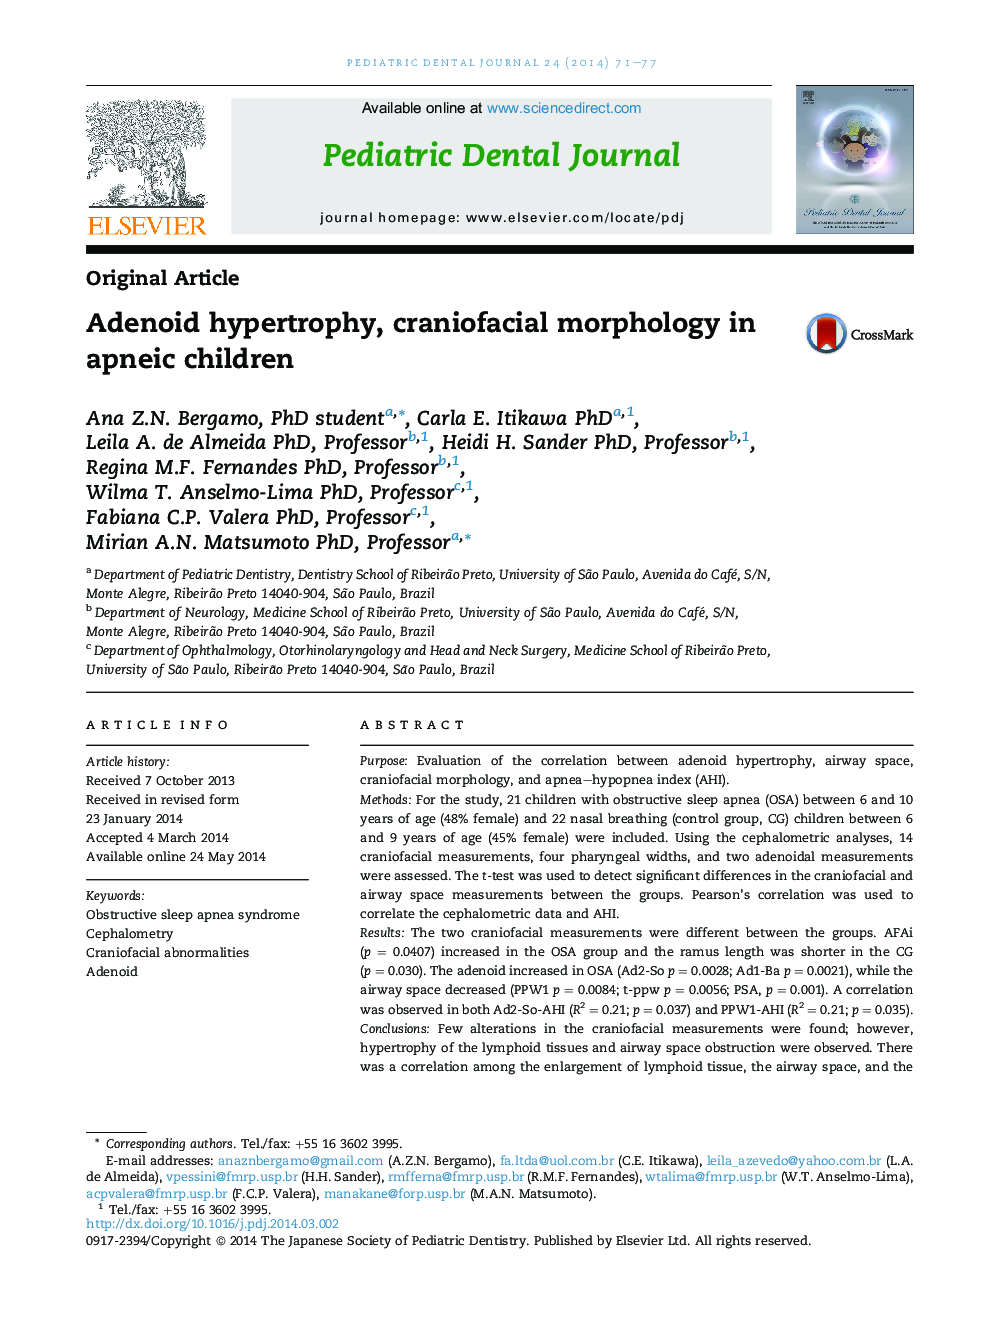 هیپرتروفی آدنوئید، مورفولوژی کرانویوفاسالی در کودکان مبتلا به آپنه 